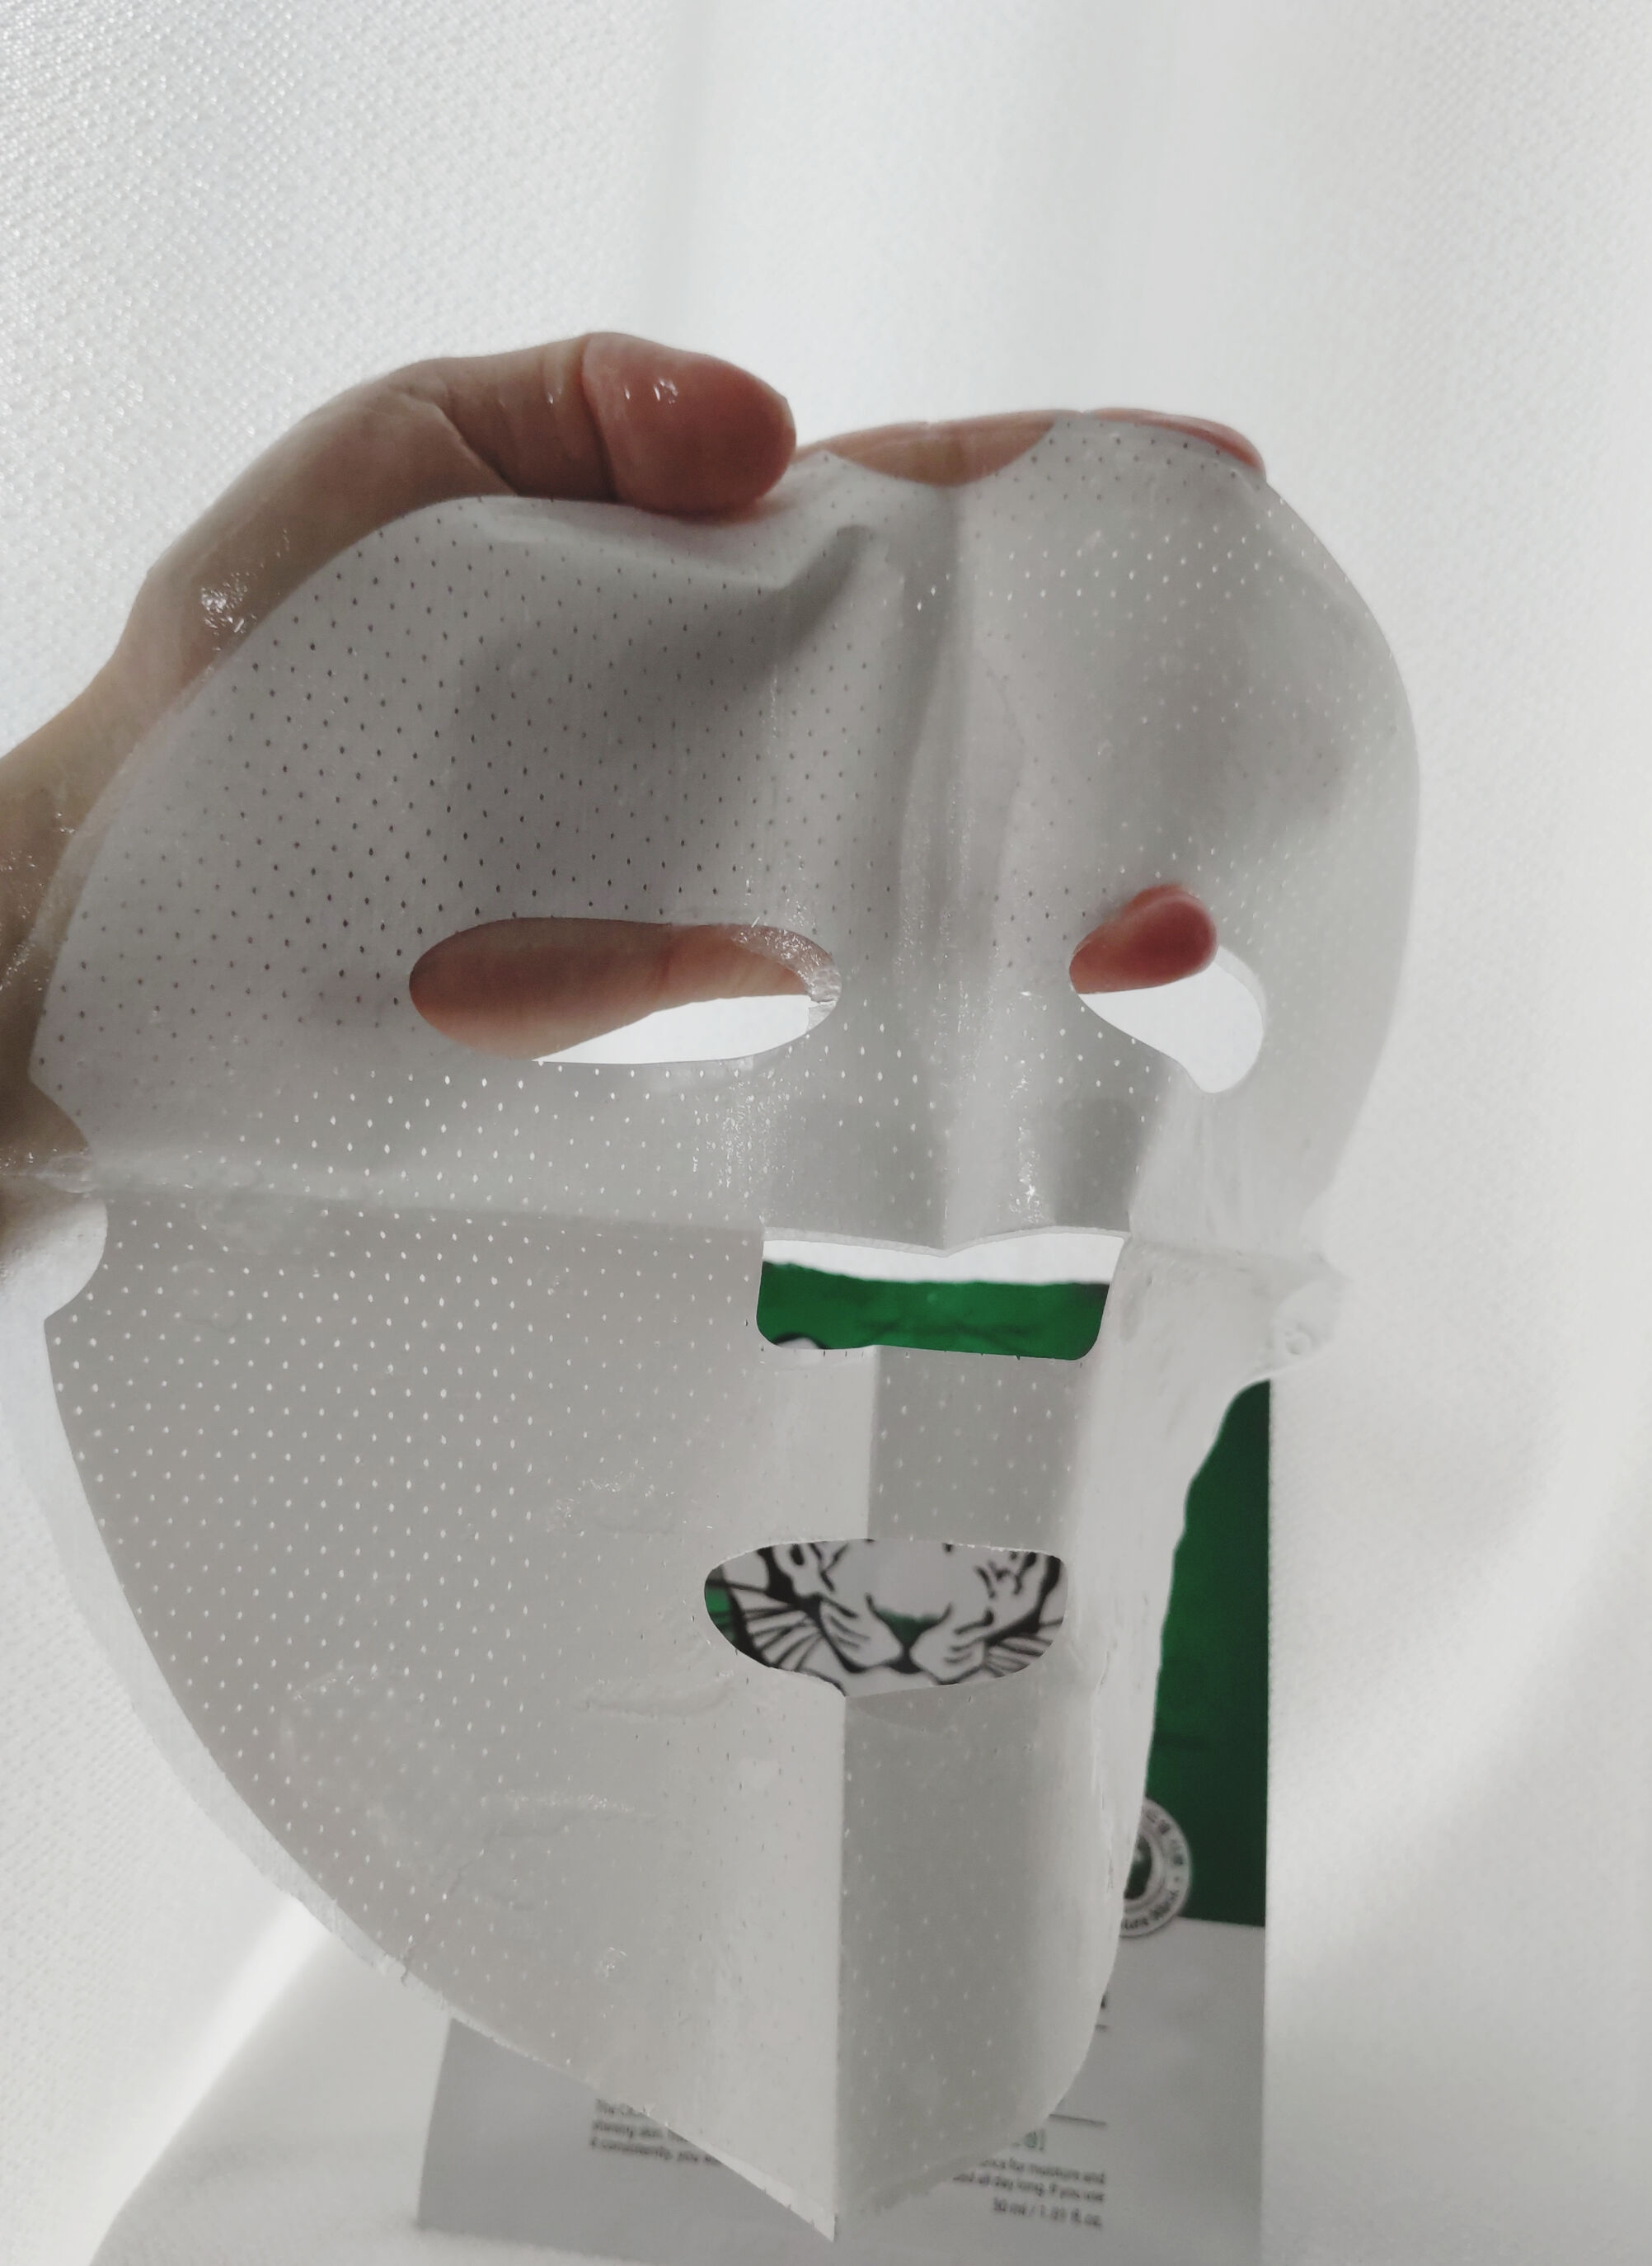 NOWATER(ノーウォーター) シカアルブチンマスクの良い点・メリットに関する恵未さんの口コミ画像3